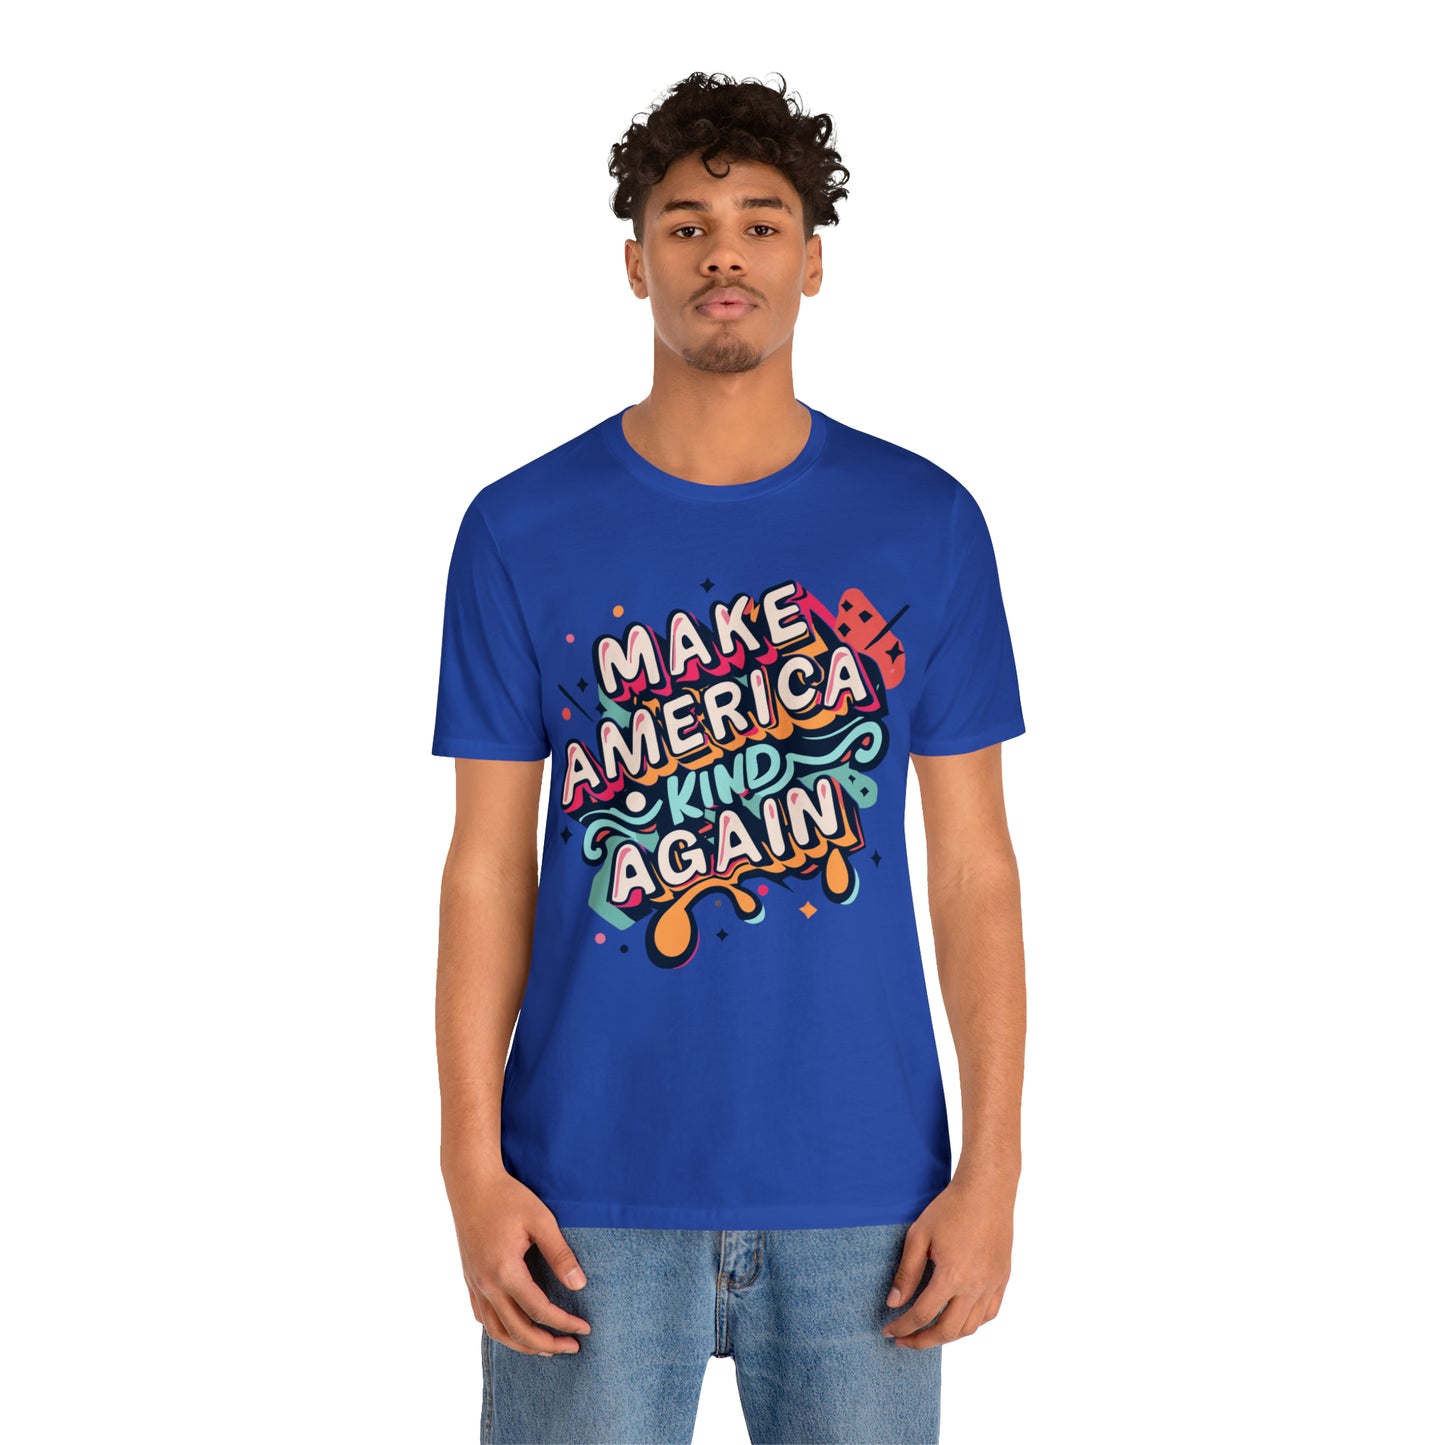 Political T-Shirt, Democrat, Republican, Politics, Vote, Election, Funny